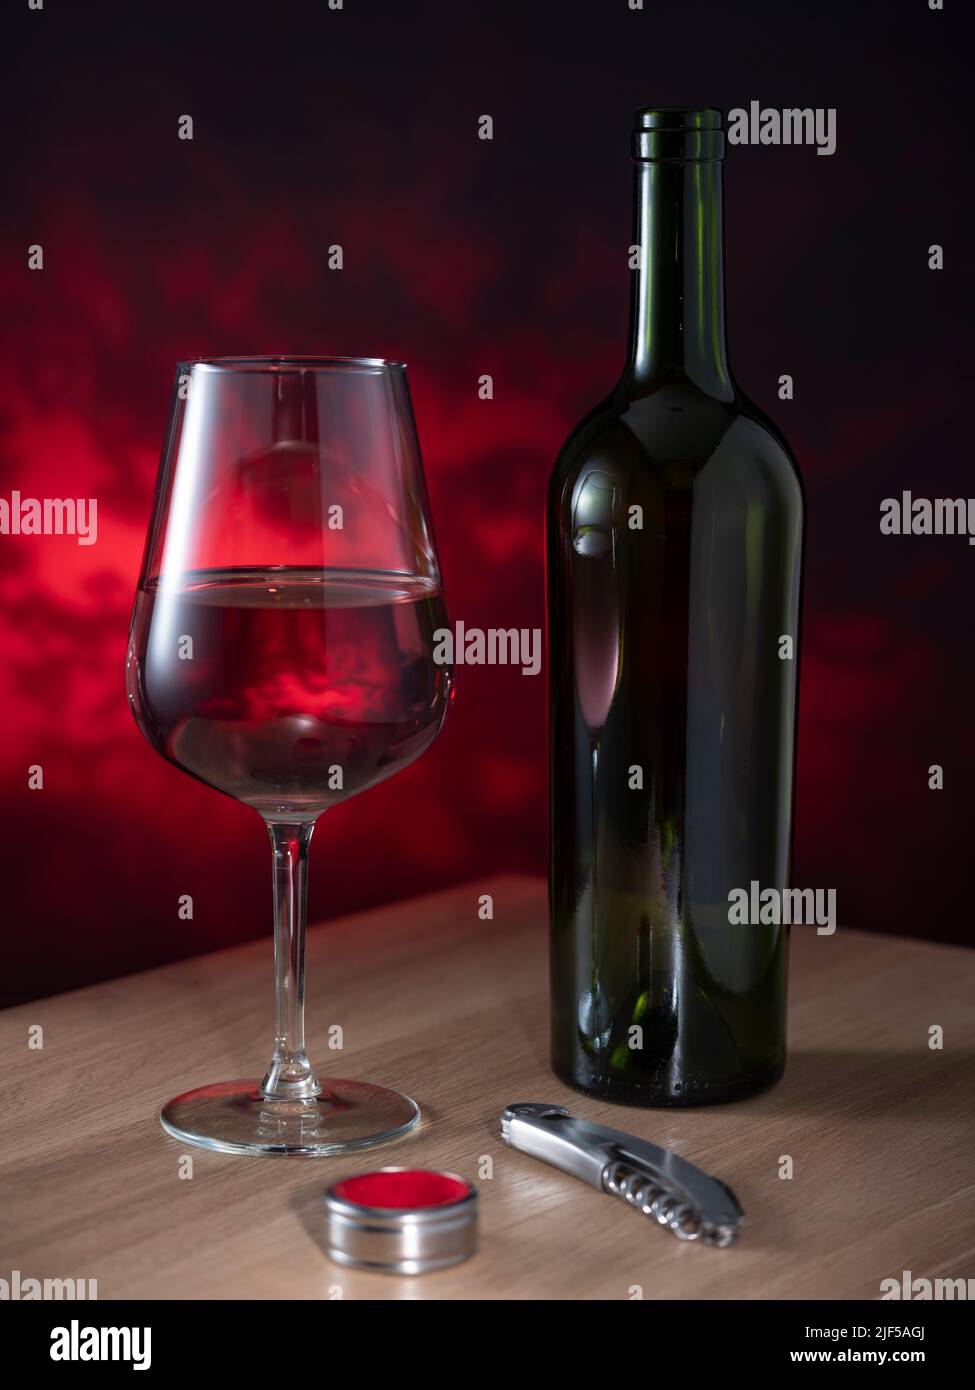 Helsinki / Finlande - 26 JUIN 2022 : une bouteille de vin rouge, un verre et un tire-bouchon sur fond sombre Banque D'Images